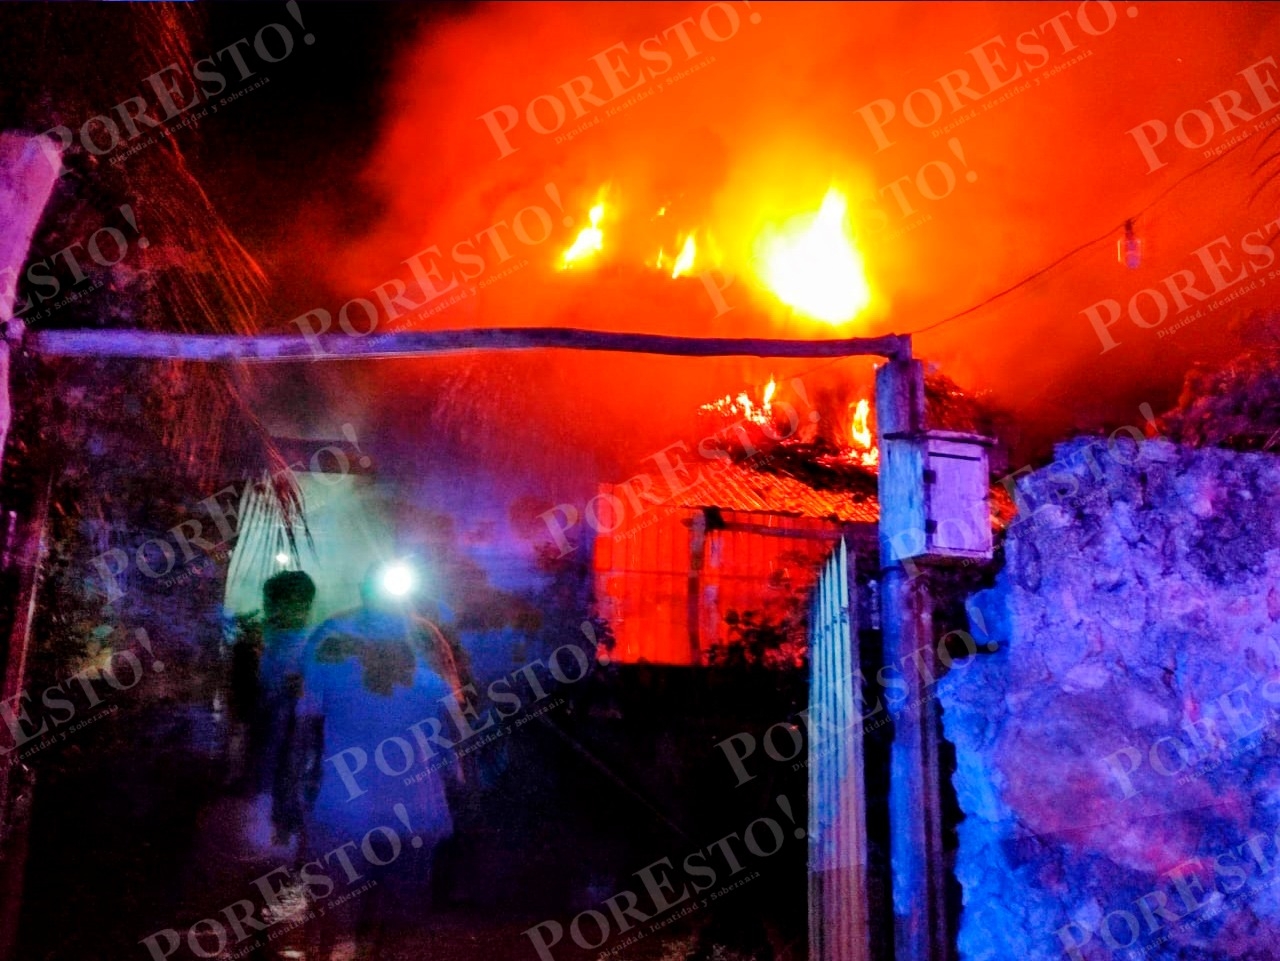 Incendio acaba con una casa de huano en Peto; fue provocado, aseguran: VIDEO